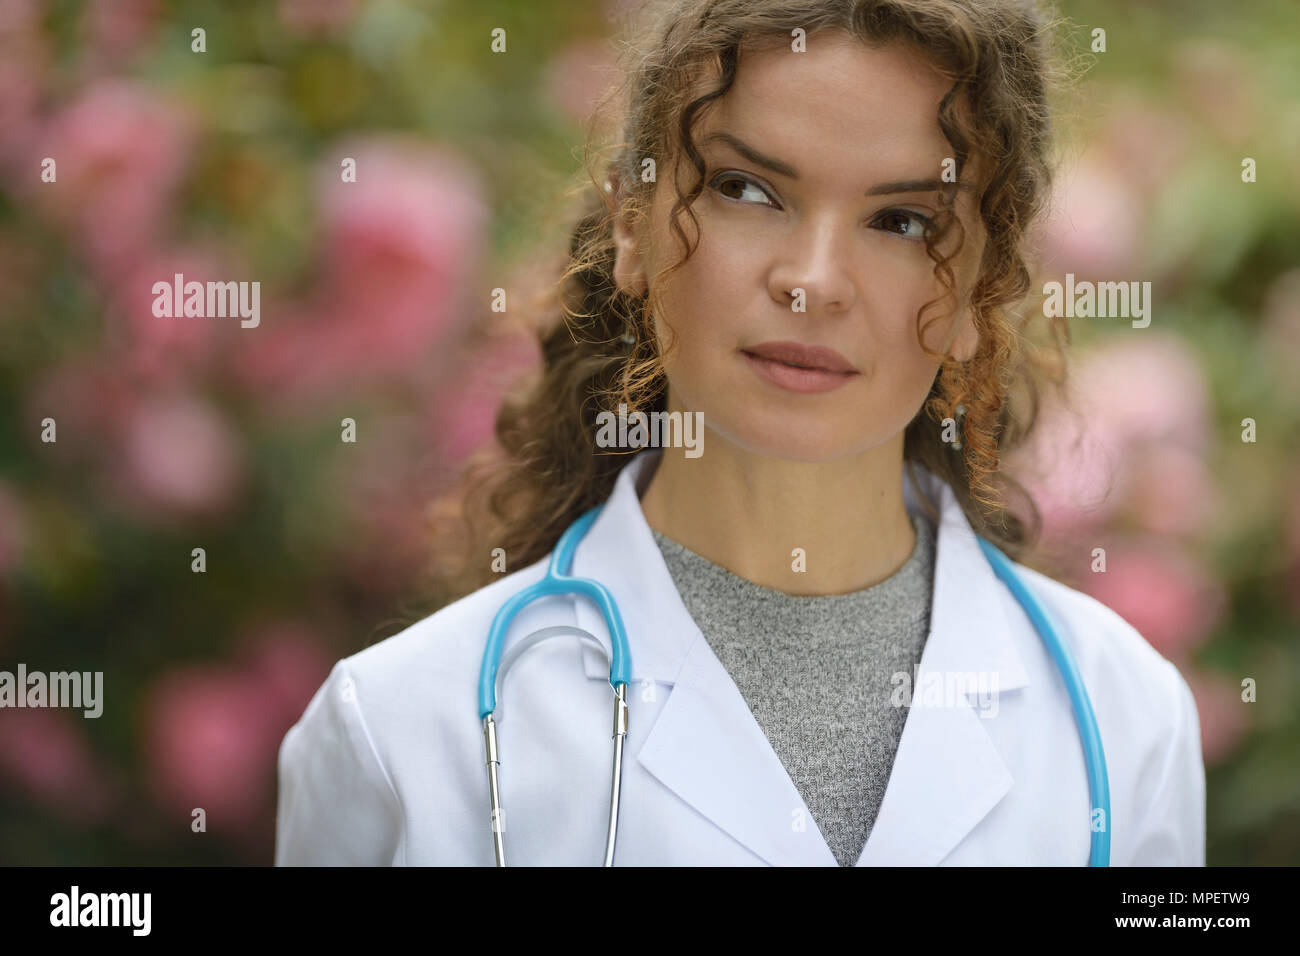 Porträt einer jungen Frau Student der Medizin mit kontemplativen nachdenklichen Blick, wenn man bedenkt, dass eine Karriere in der natürlichen Medizin, Gesundheitswesen, Arzt, Arzt. Stockfoto